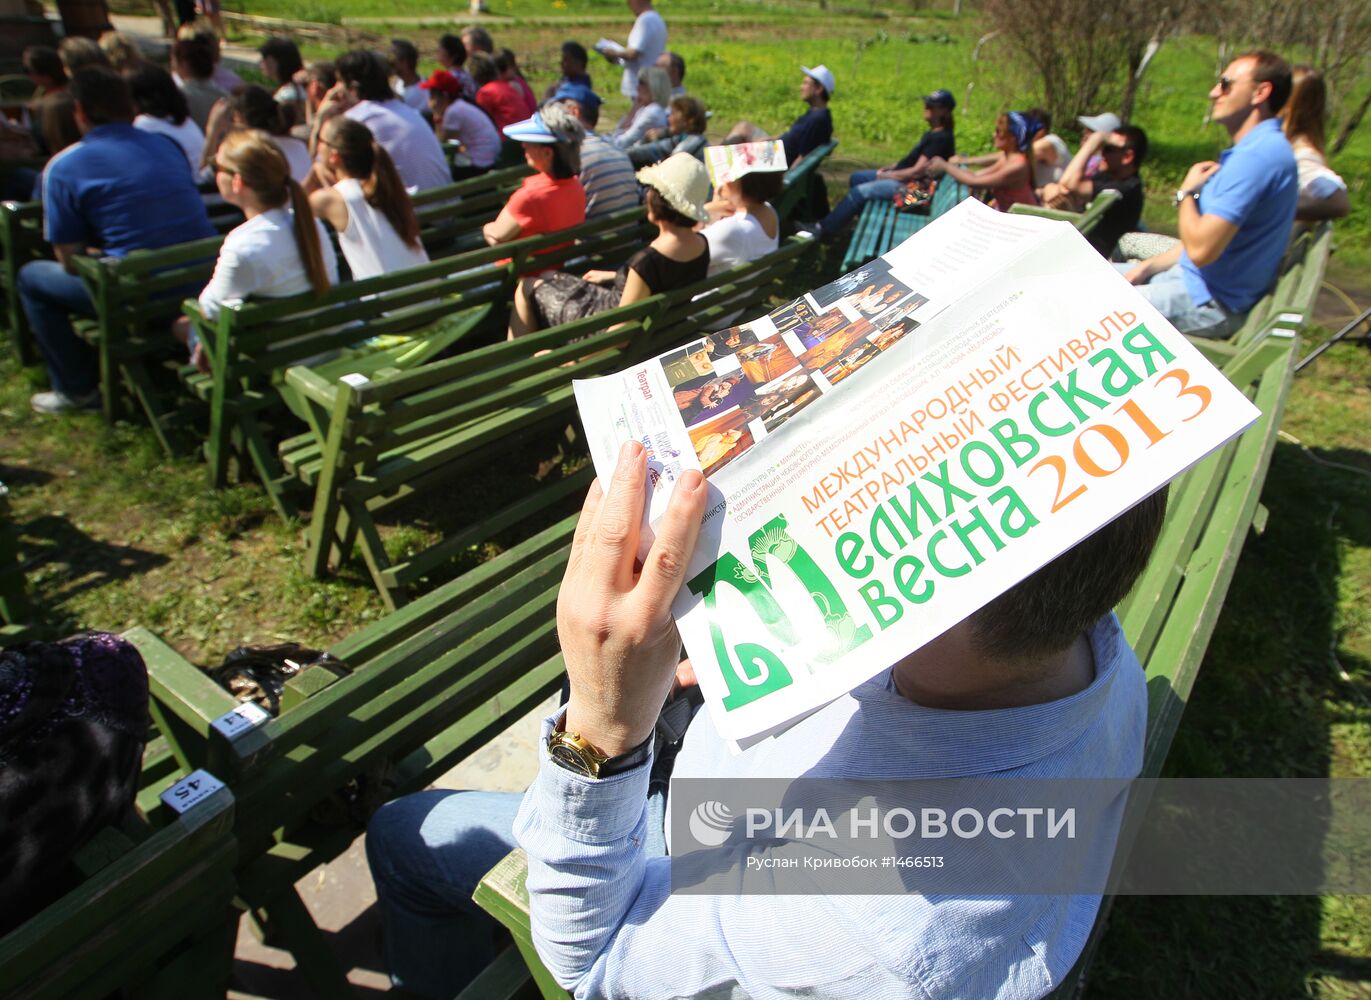 Открытие театрального фестиваля "Мелиховская весна"